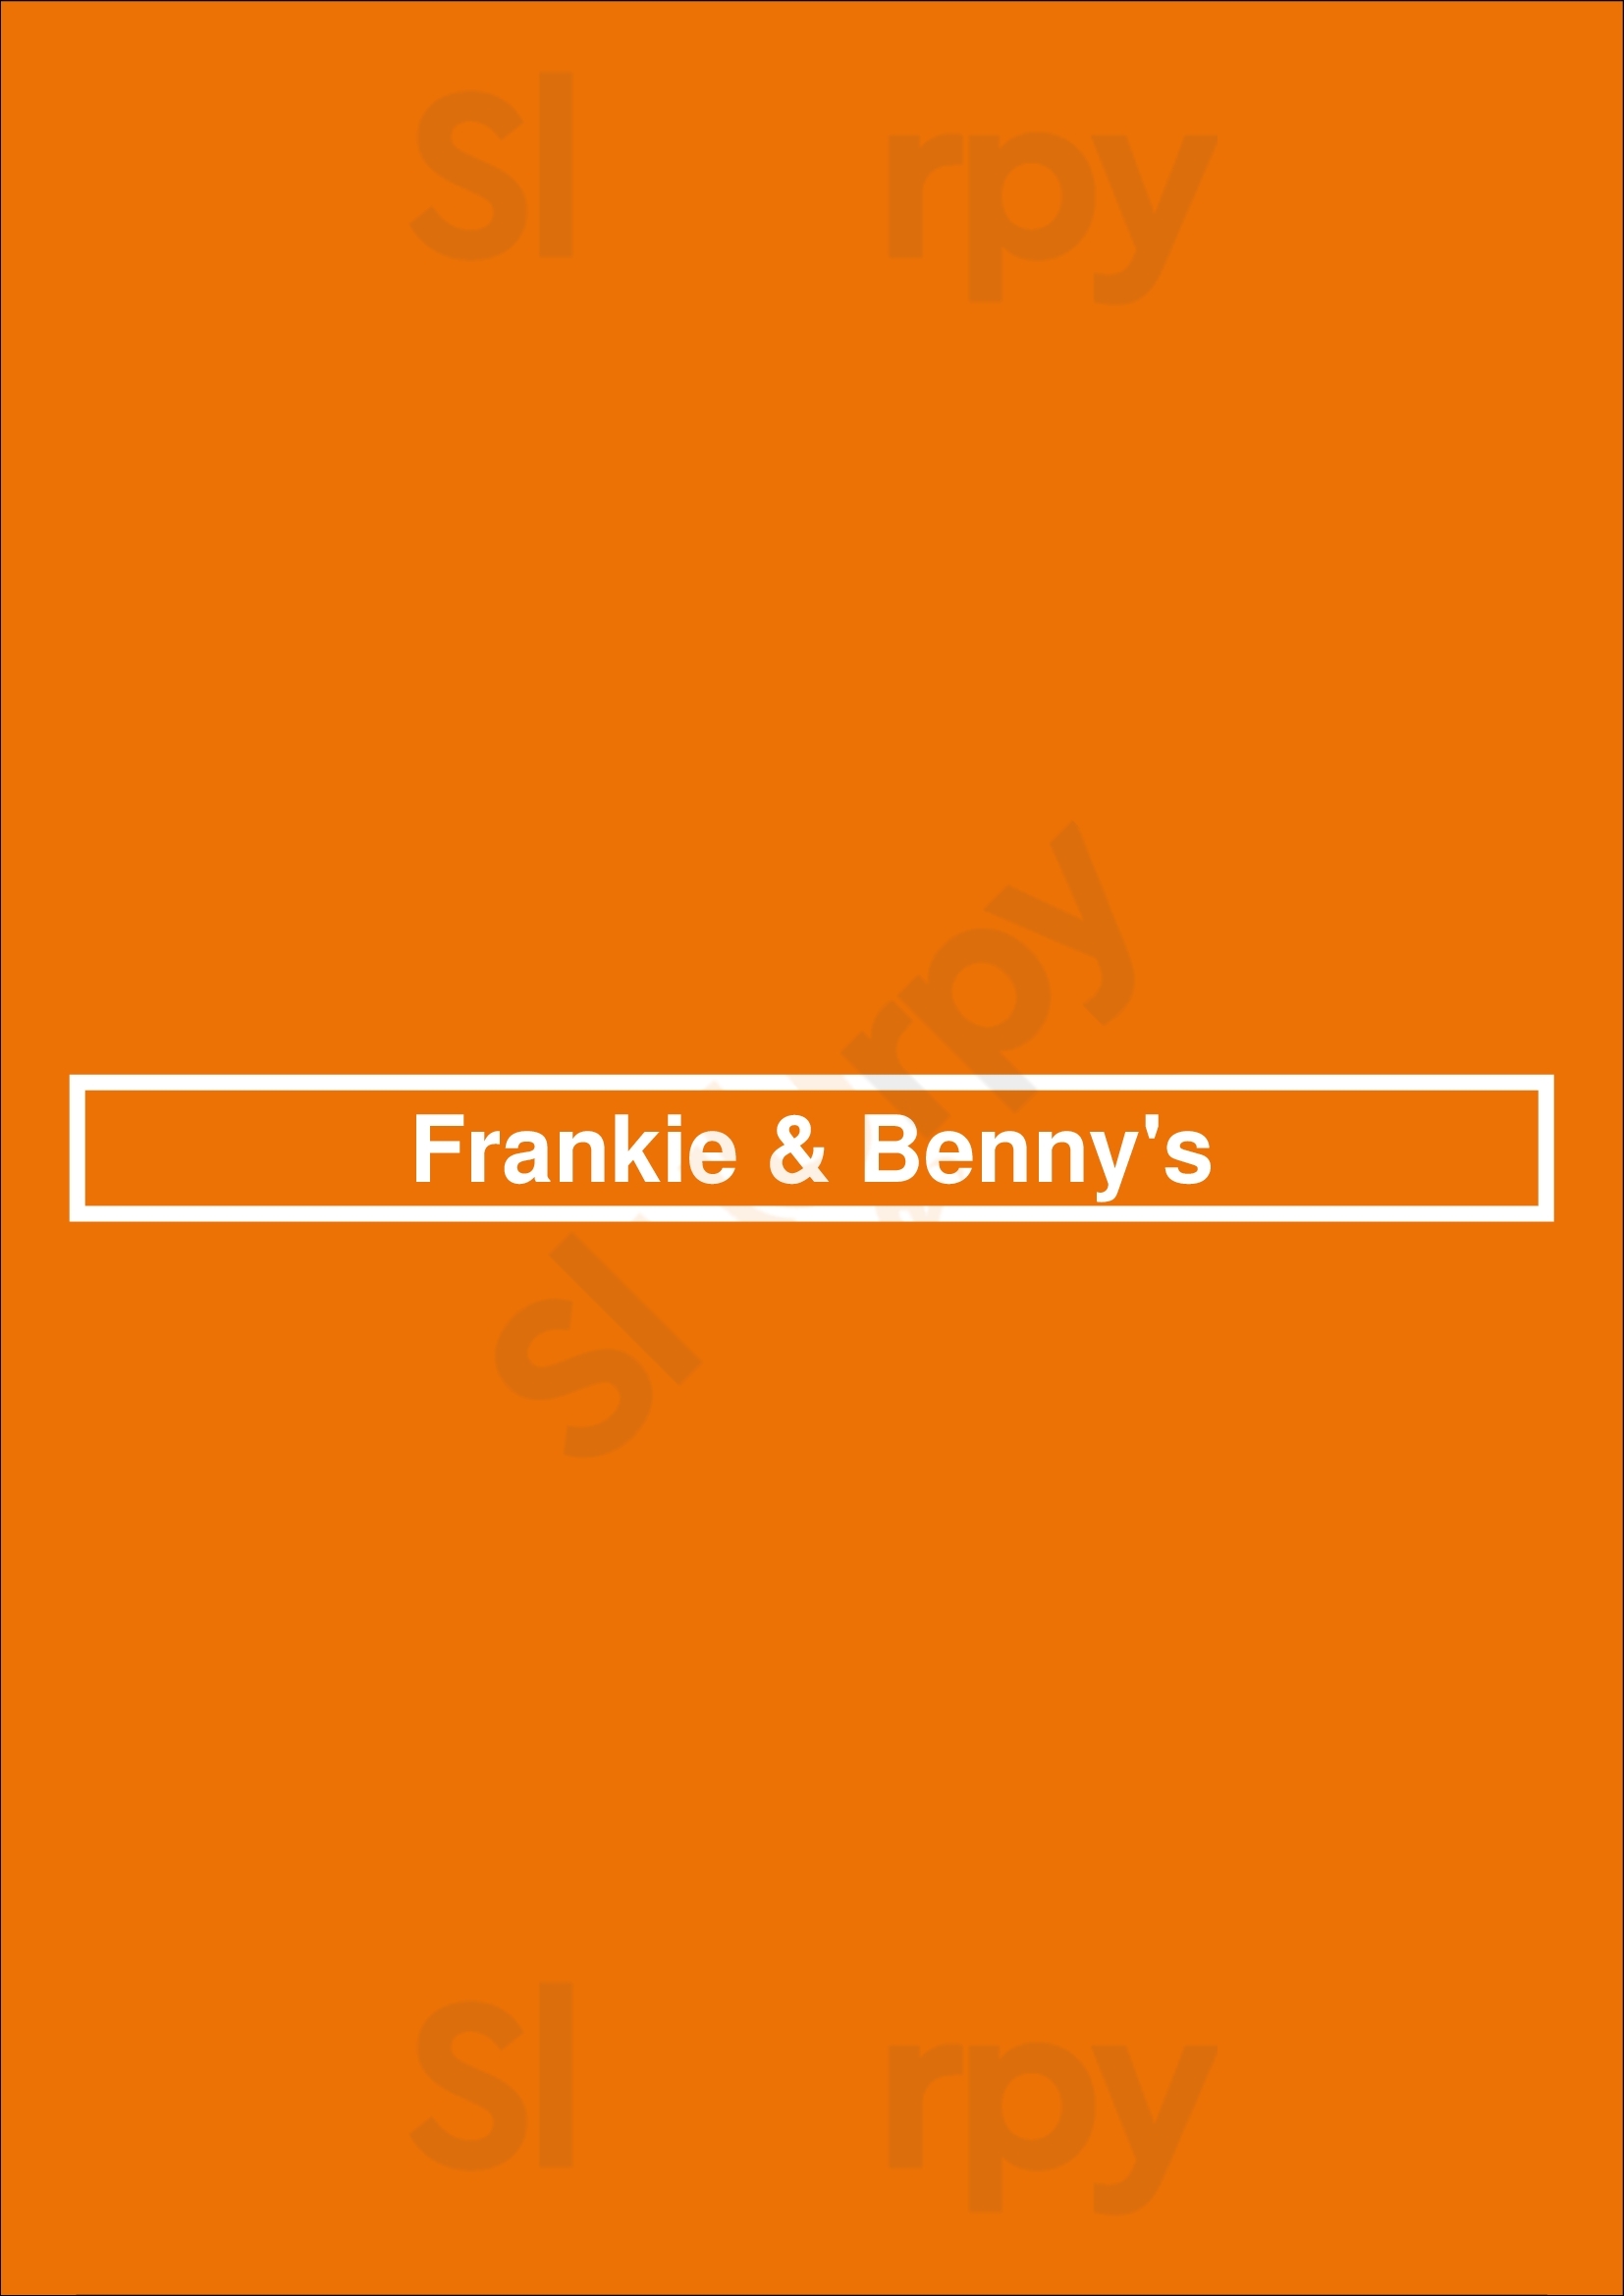 Frankie & Benny's Telford Menu - 1